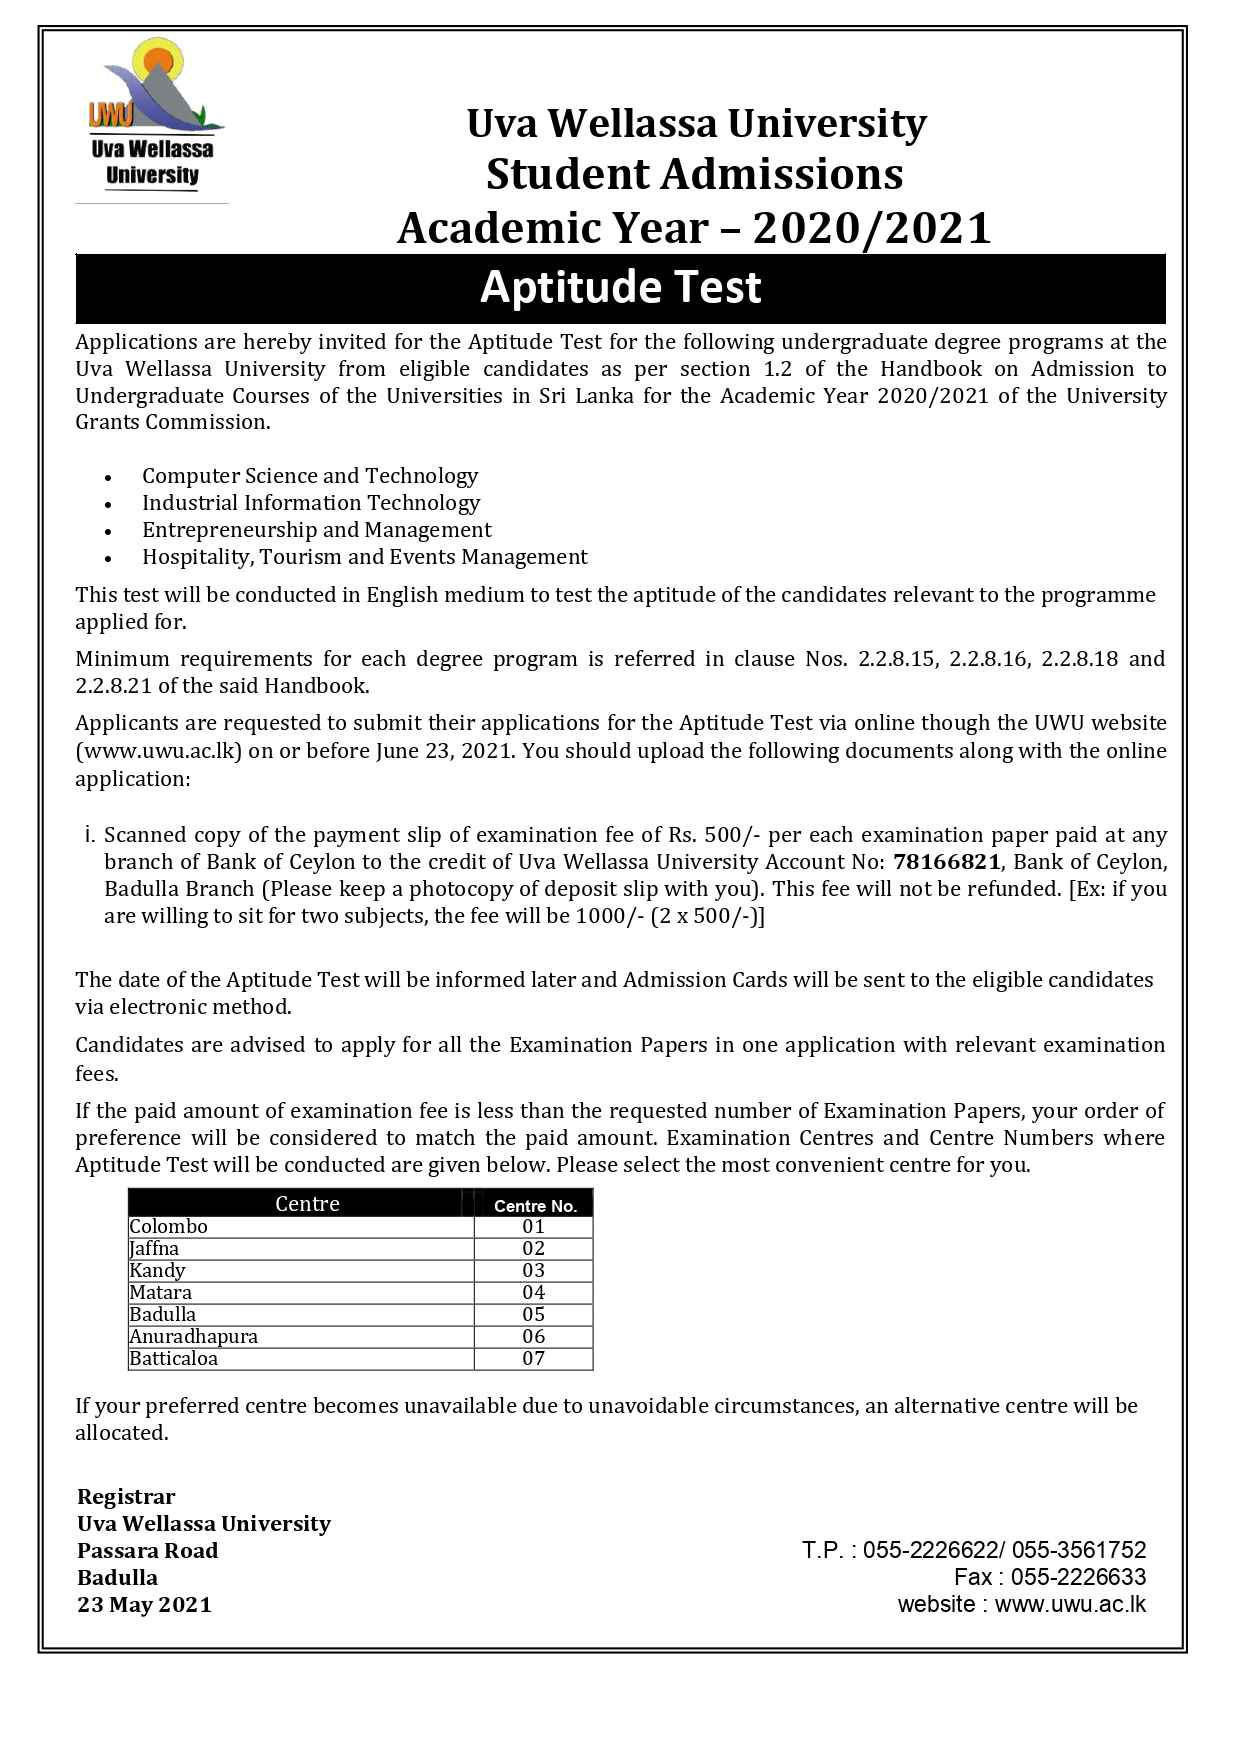 uva-wellassa-university-aptitude-test-2021-application